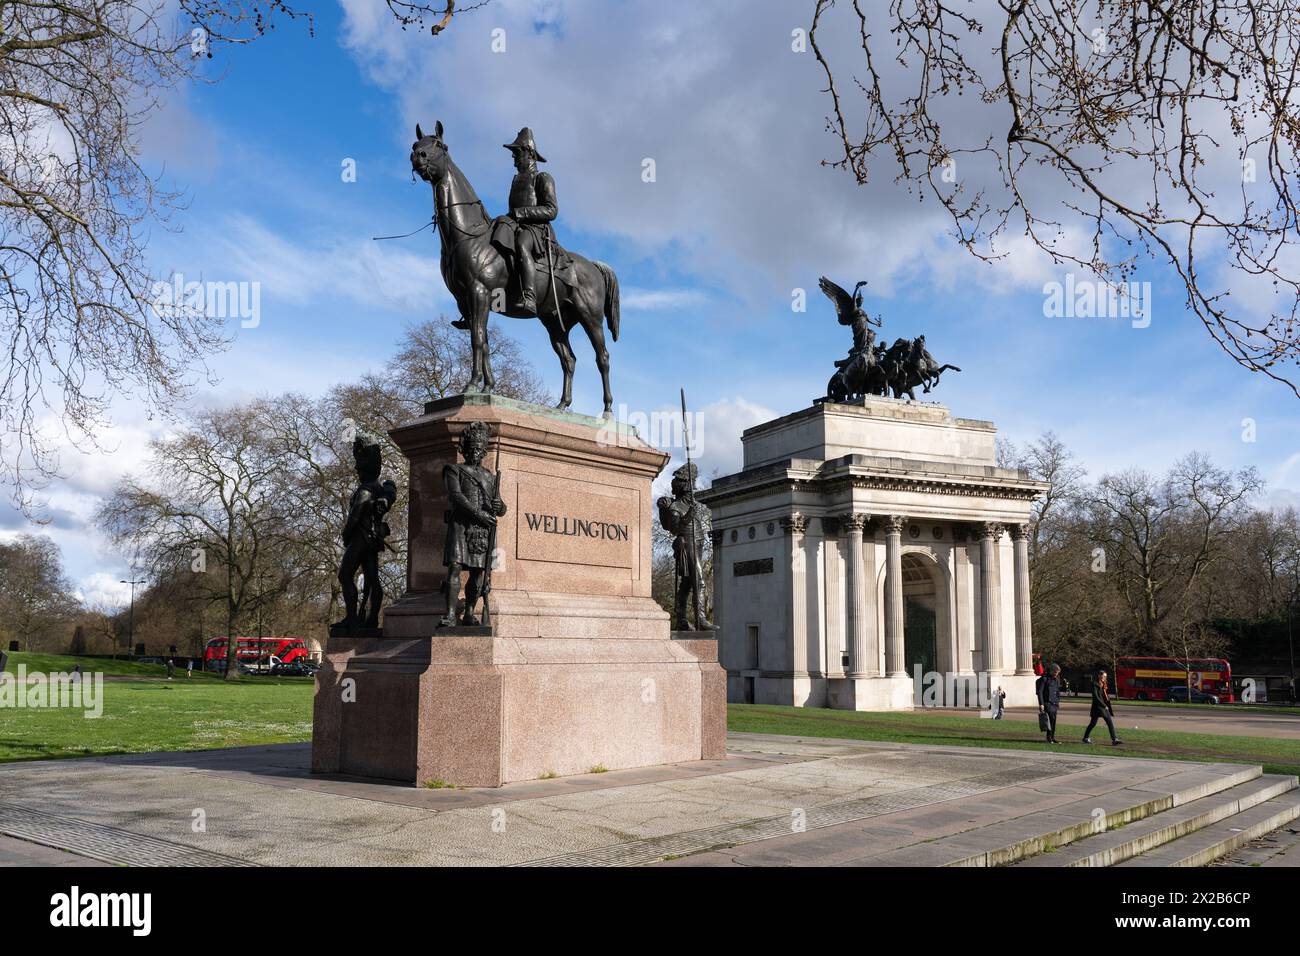 Statua equestre in bronzo del Duca di Wellington, e dietro, il Wellington Arch, noto anche come Constitution Arch. Hyde Park Corner, Londra, Regno Unito Foto Stock